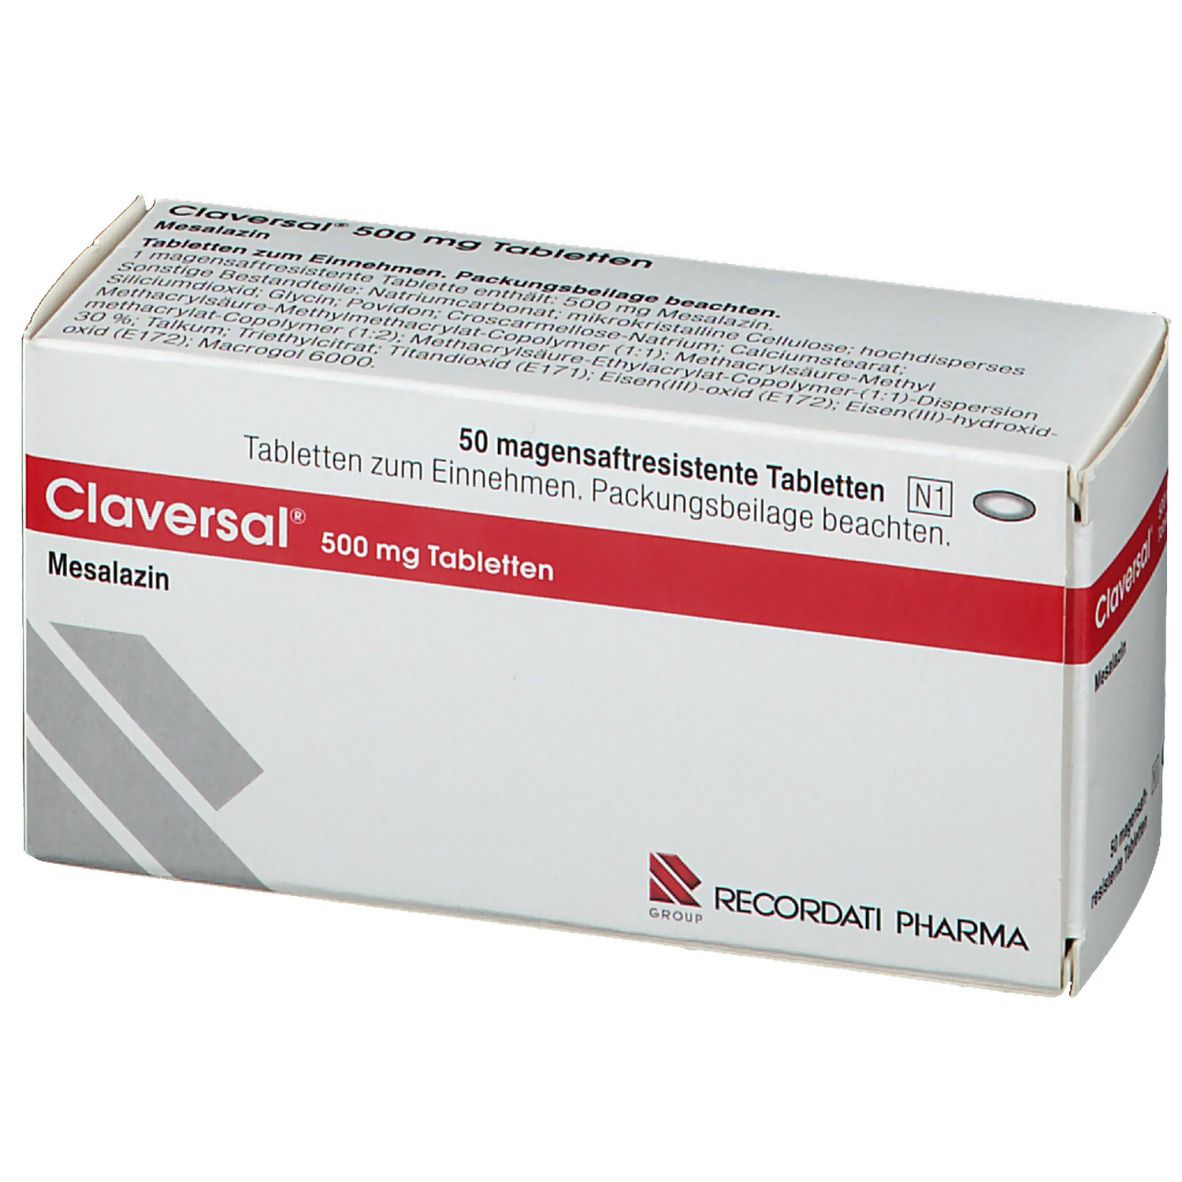 Claversal® 500 mg